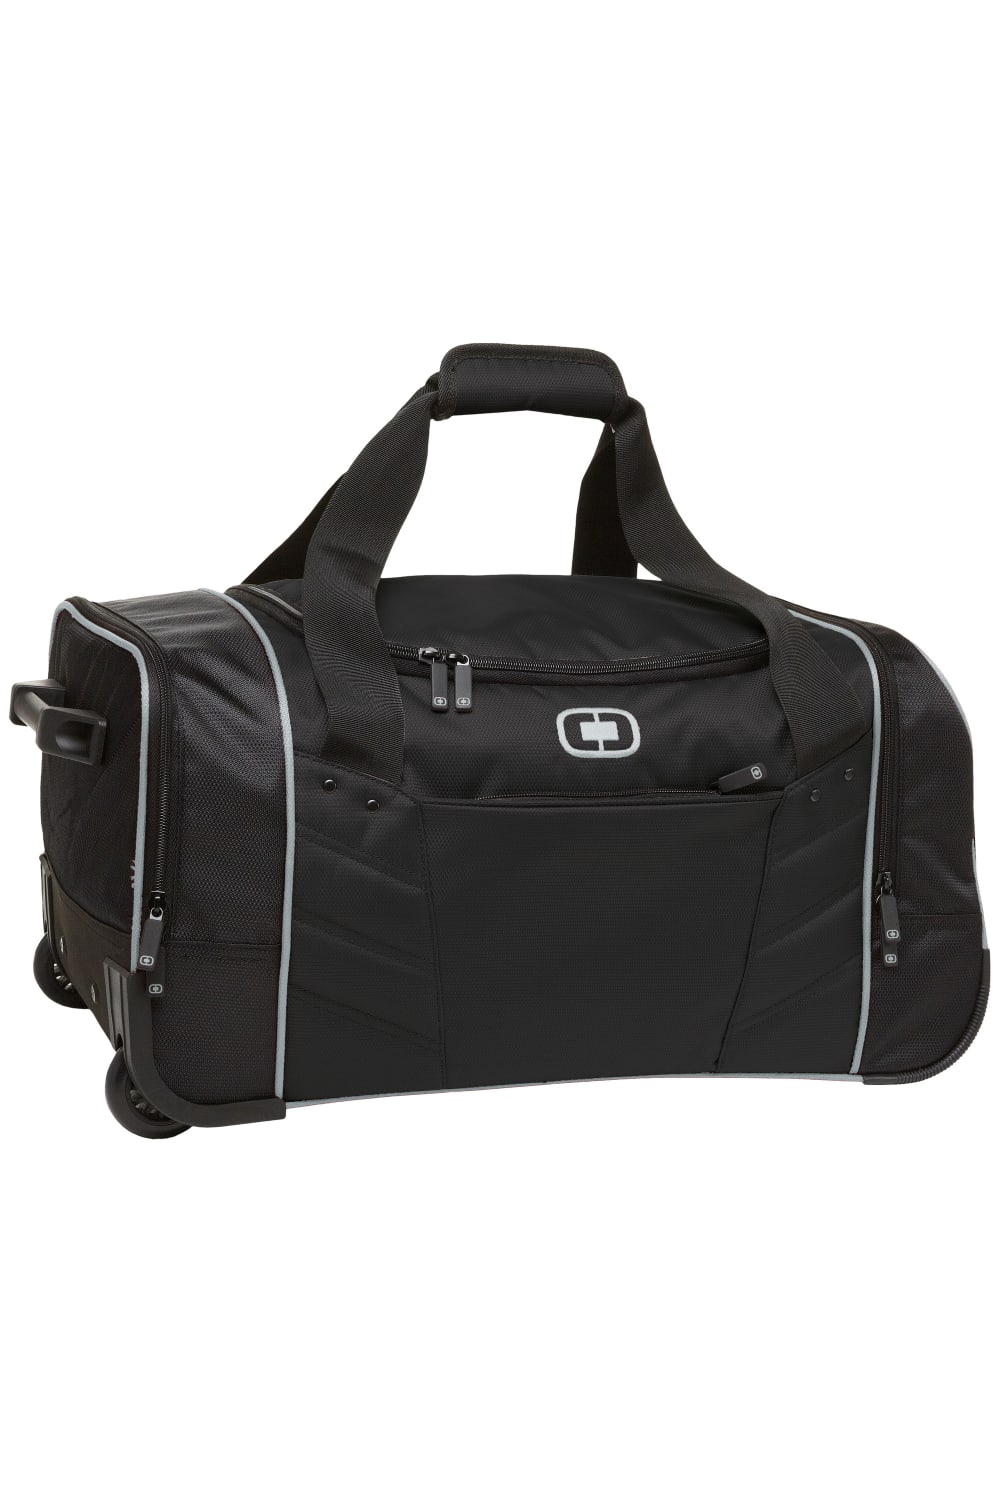 Ogio Hamblin 22” Traveler Duffel Bag (Pack of 2) (Black) (One Size)